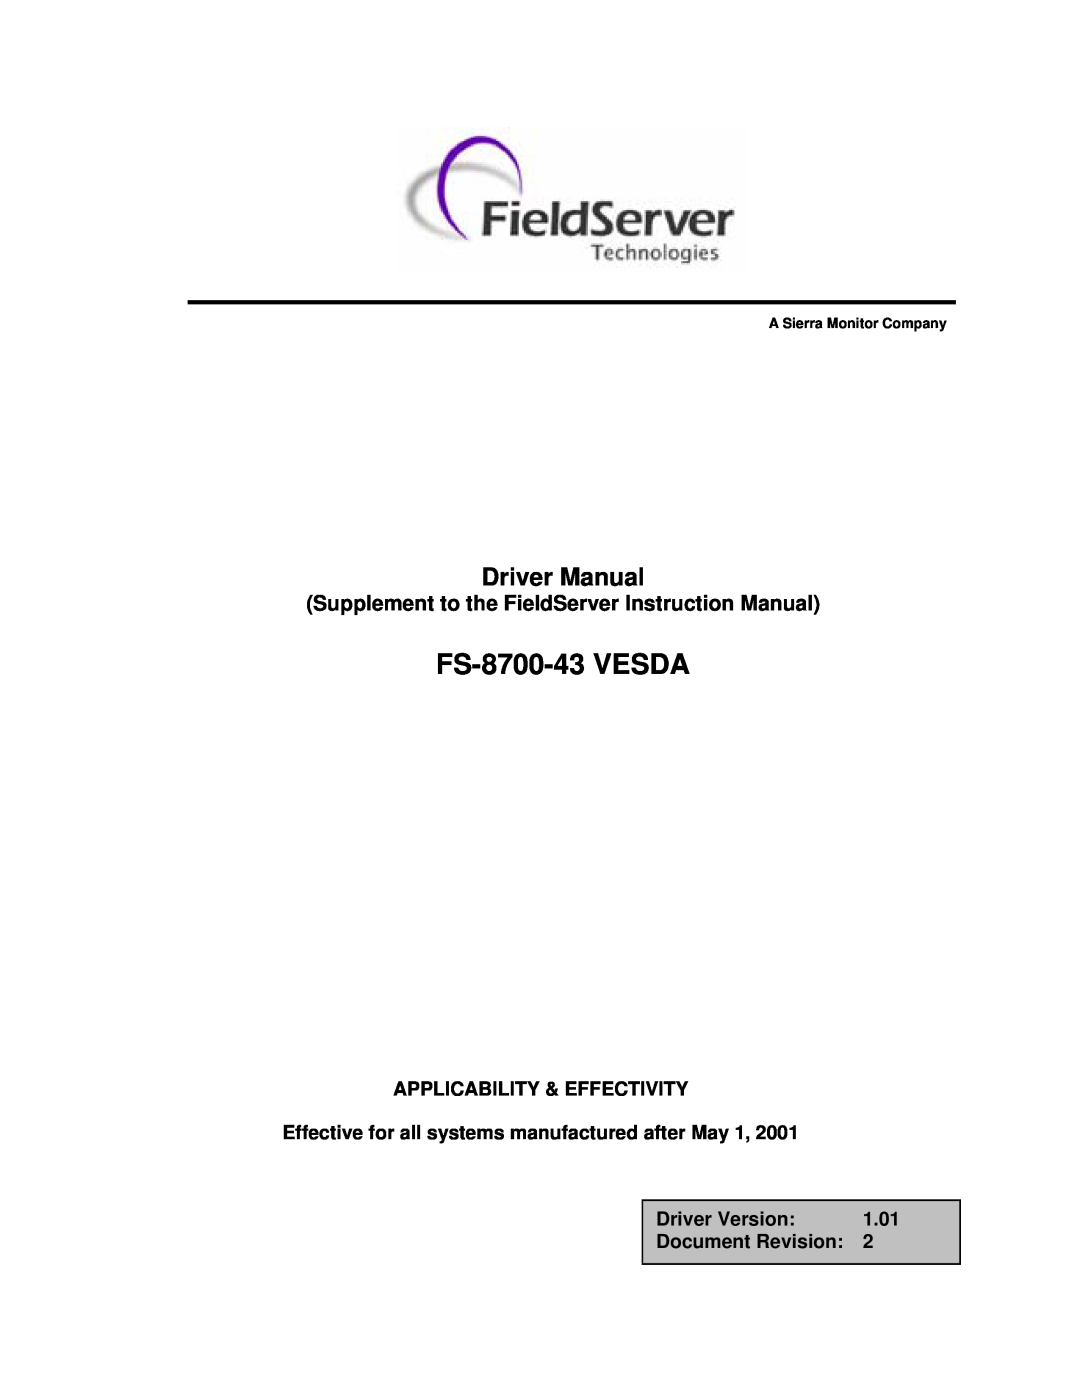 FieldServer instruction manual FS-8700-43 VESDA, Supplement to the FieldServer Instruction Manual, Driver Manual 